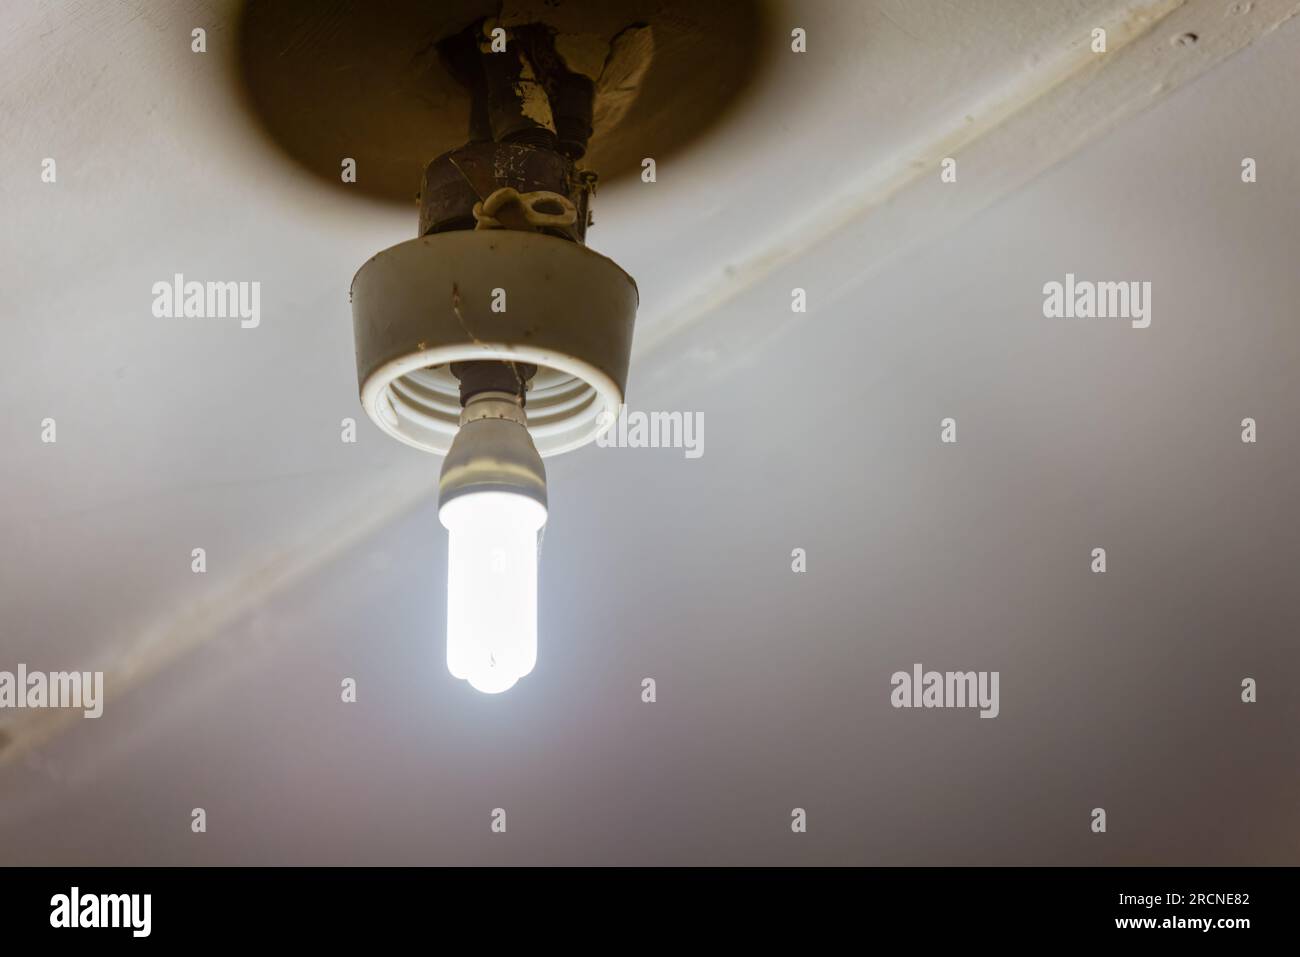 Ampoule de danger Banque de photographies et d'images à haute résolution -  Alamy